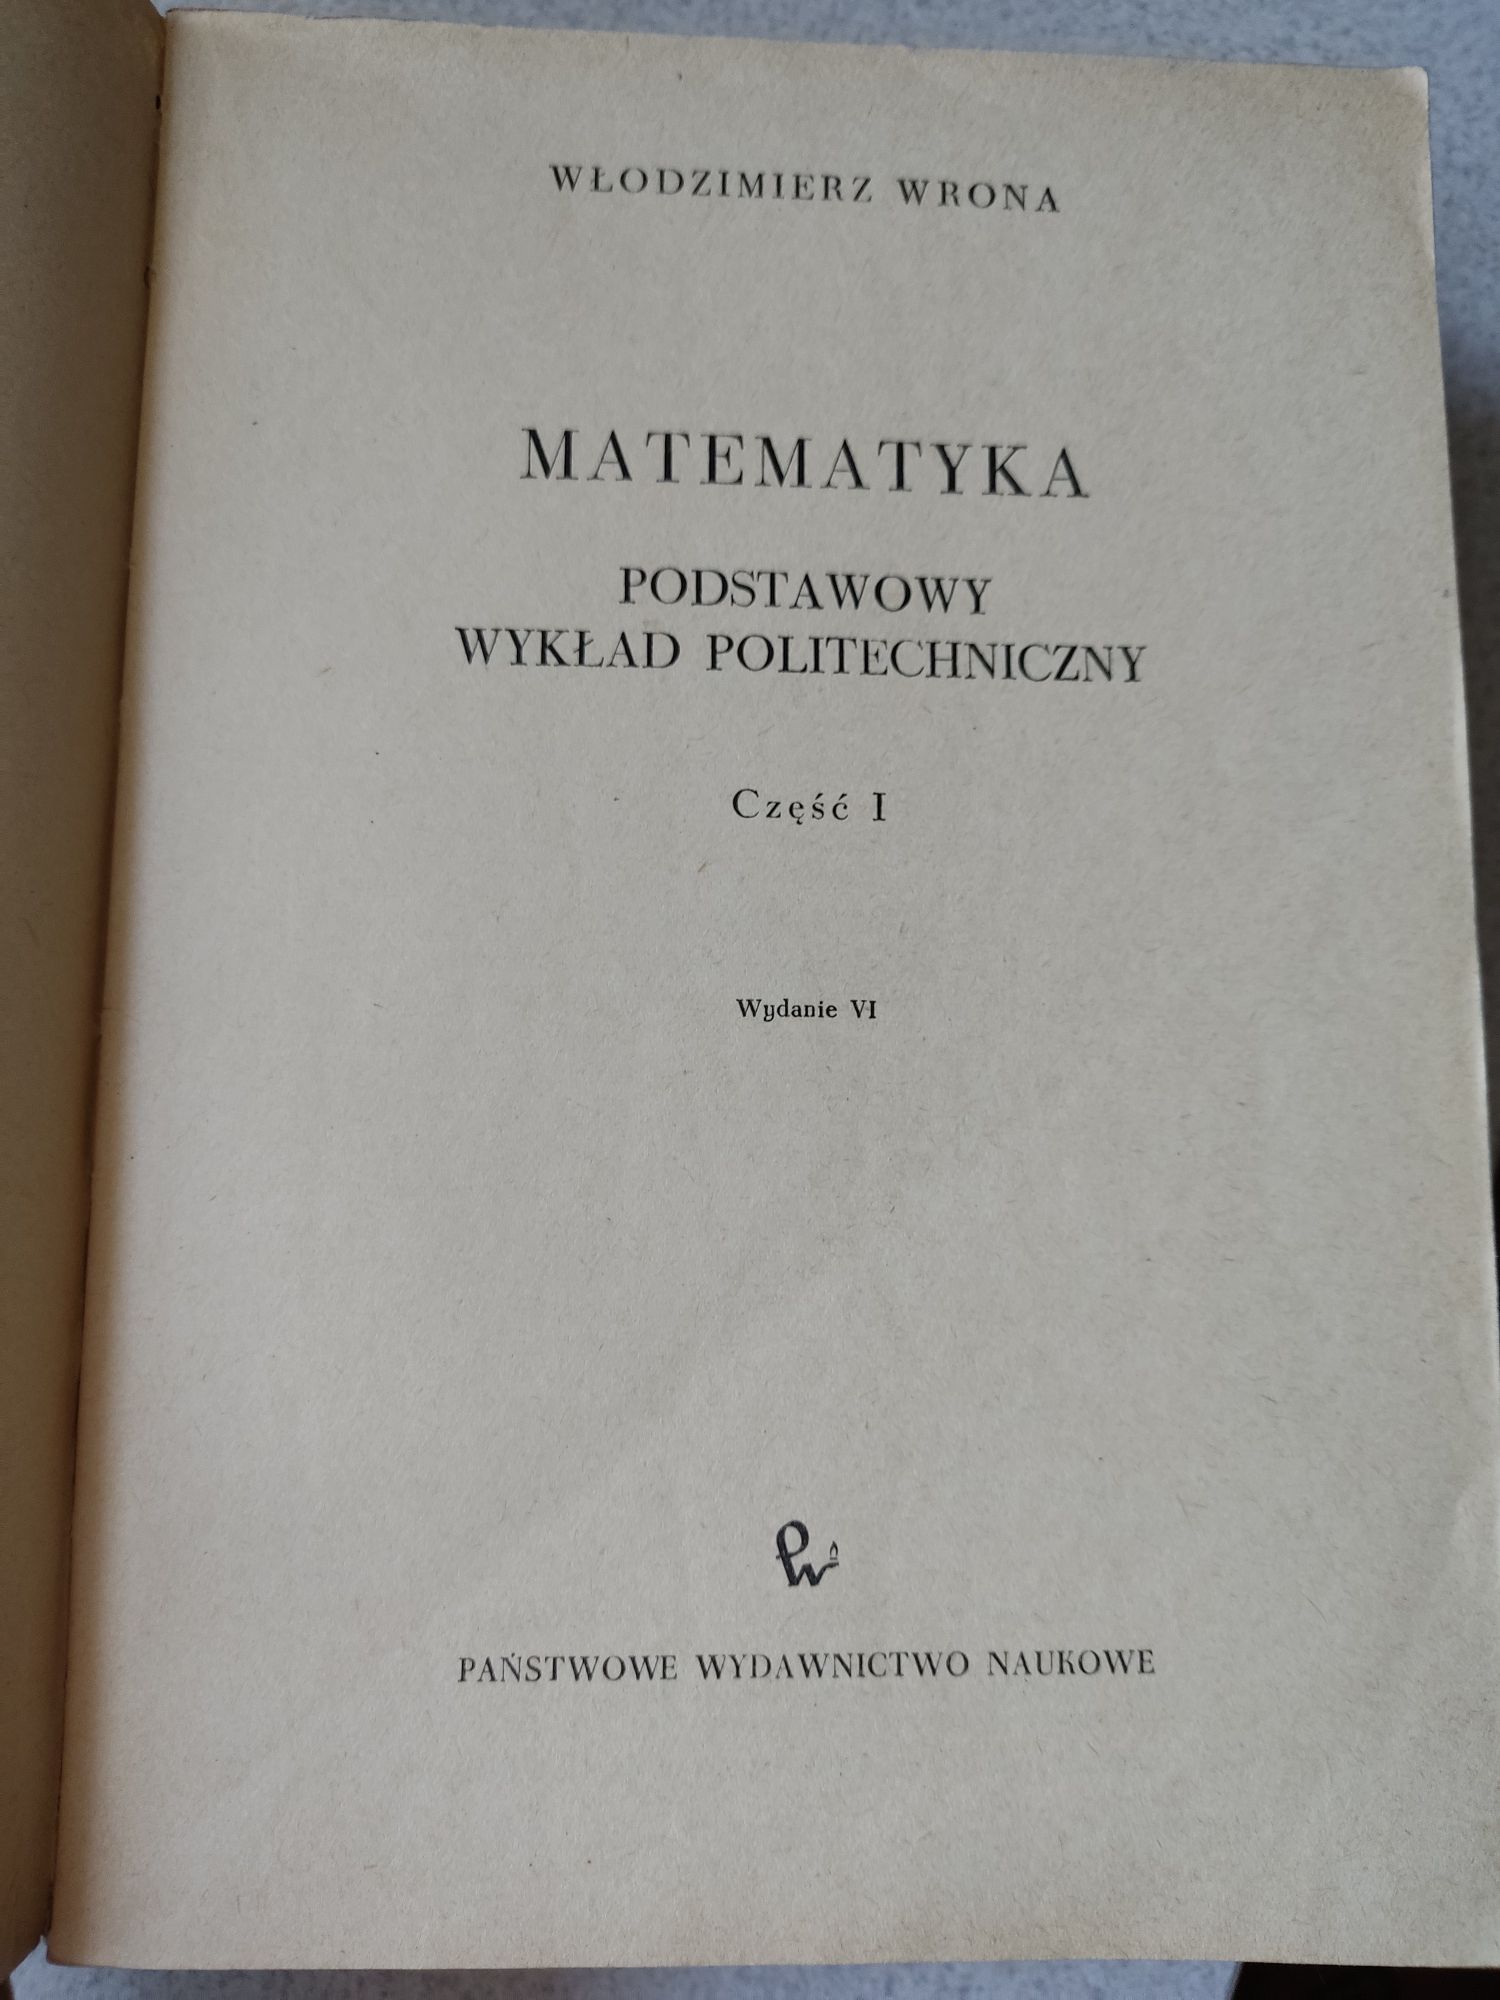 Matematyka podstawy, część 1 Wrona (wyd. 1971)